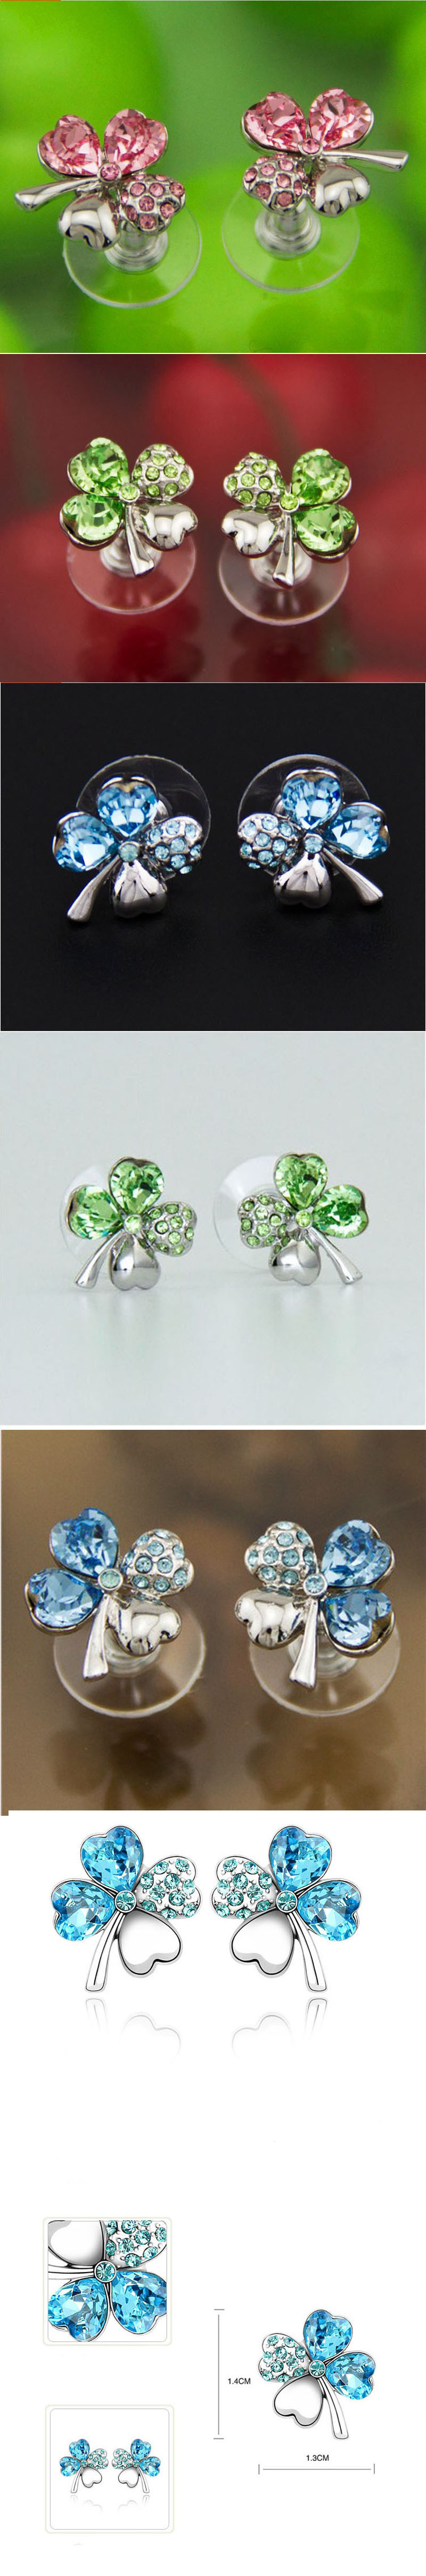 da5268ba 9060 418e aedb c09da9fcc930 - Four-leaf clover crystal necklace earrings